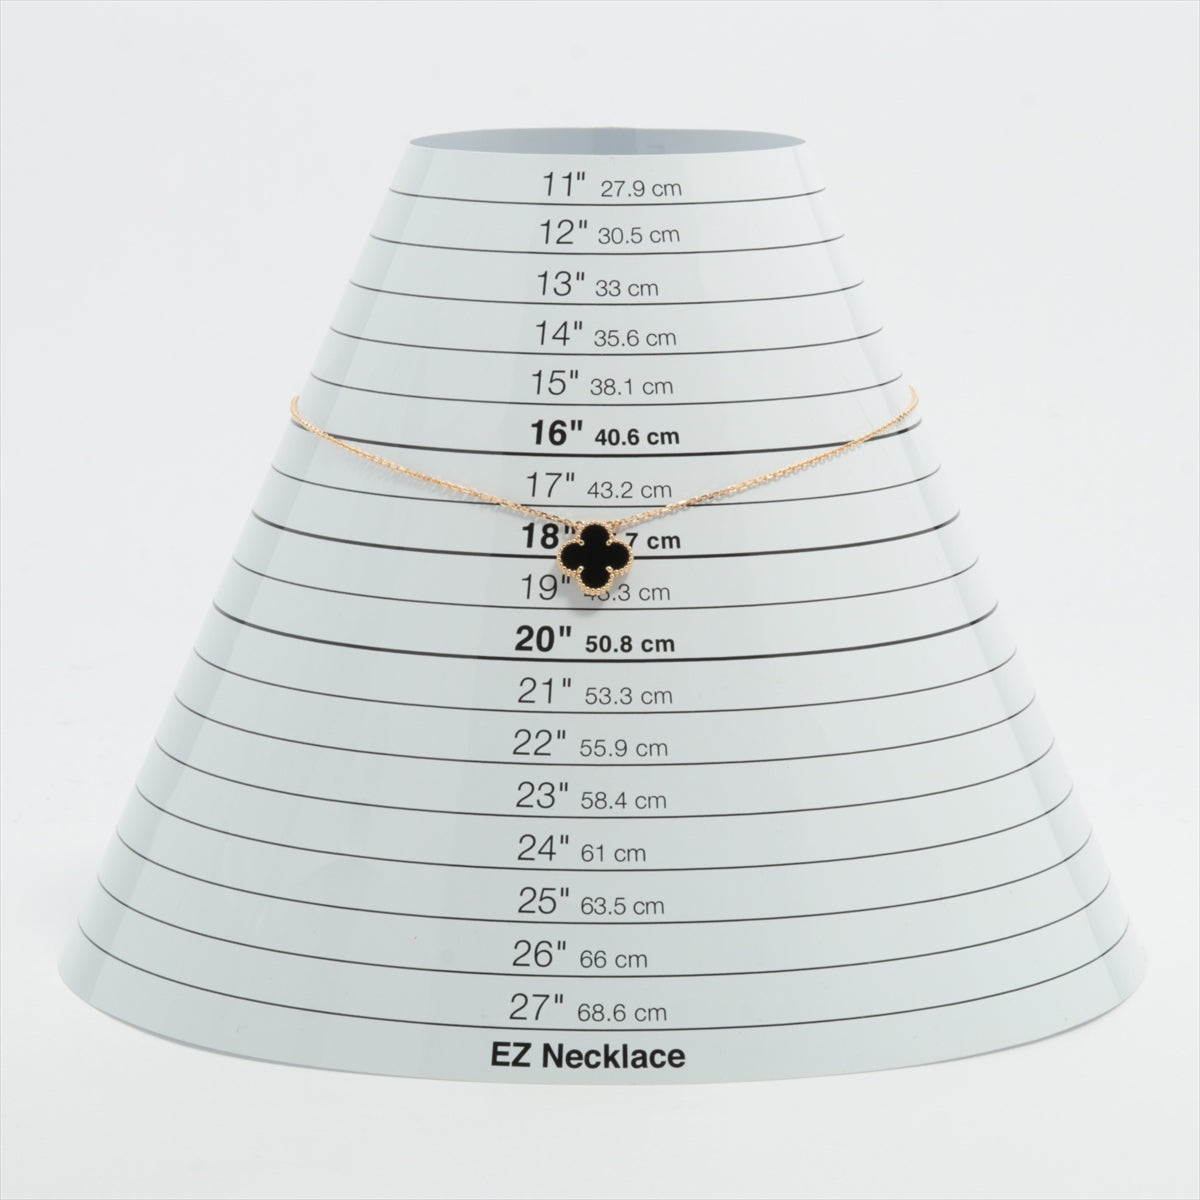 Van Cleef & Arpels Vintage Alhambra Onyx Necklace 750(YG) 5.1g